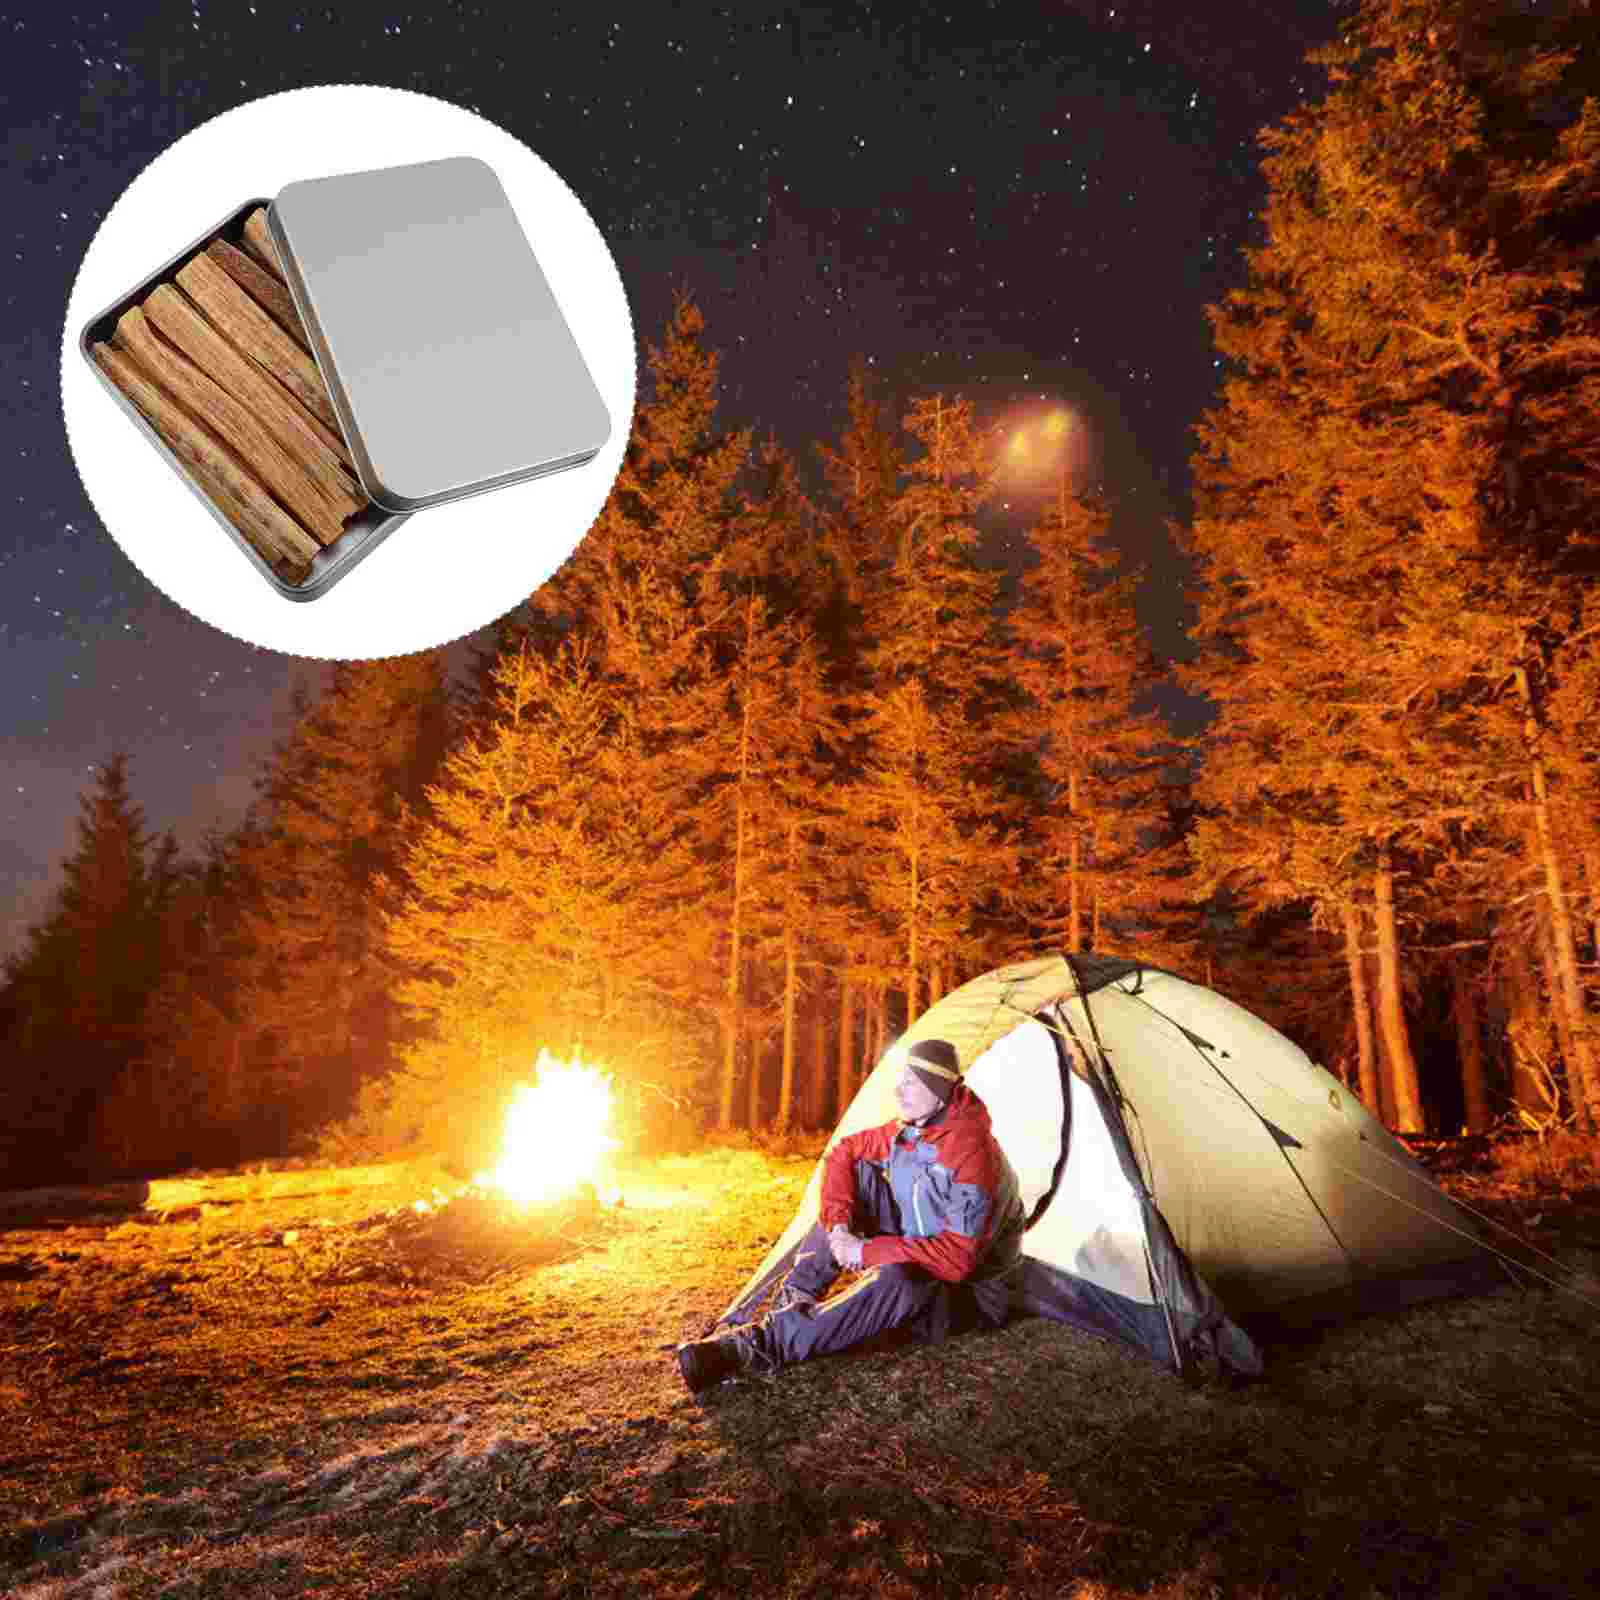 

Camping Survival Fire Starter Outdoor Quick Fire Kit Firestarter Sticks Outdoor Emergency Camping Sports Fire Starter